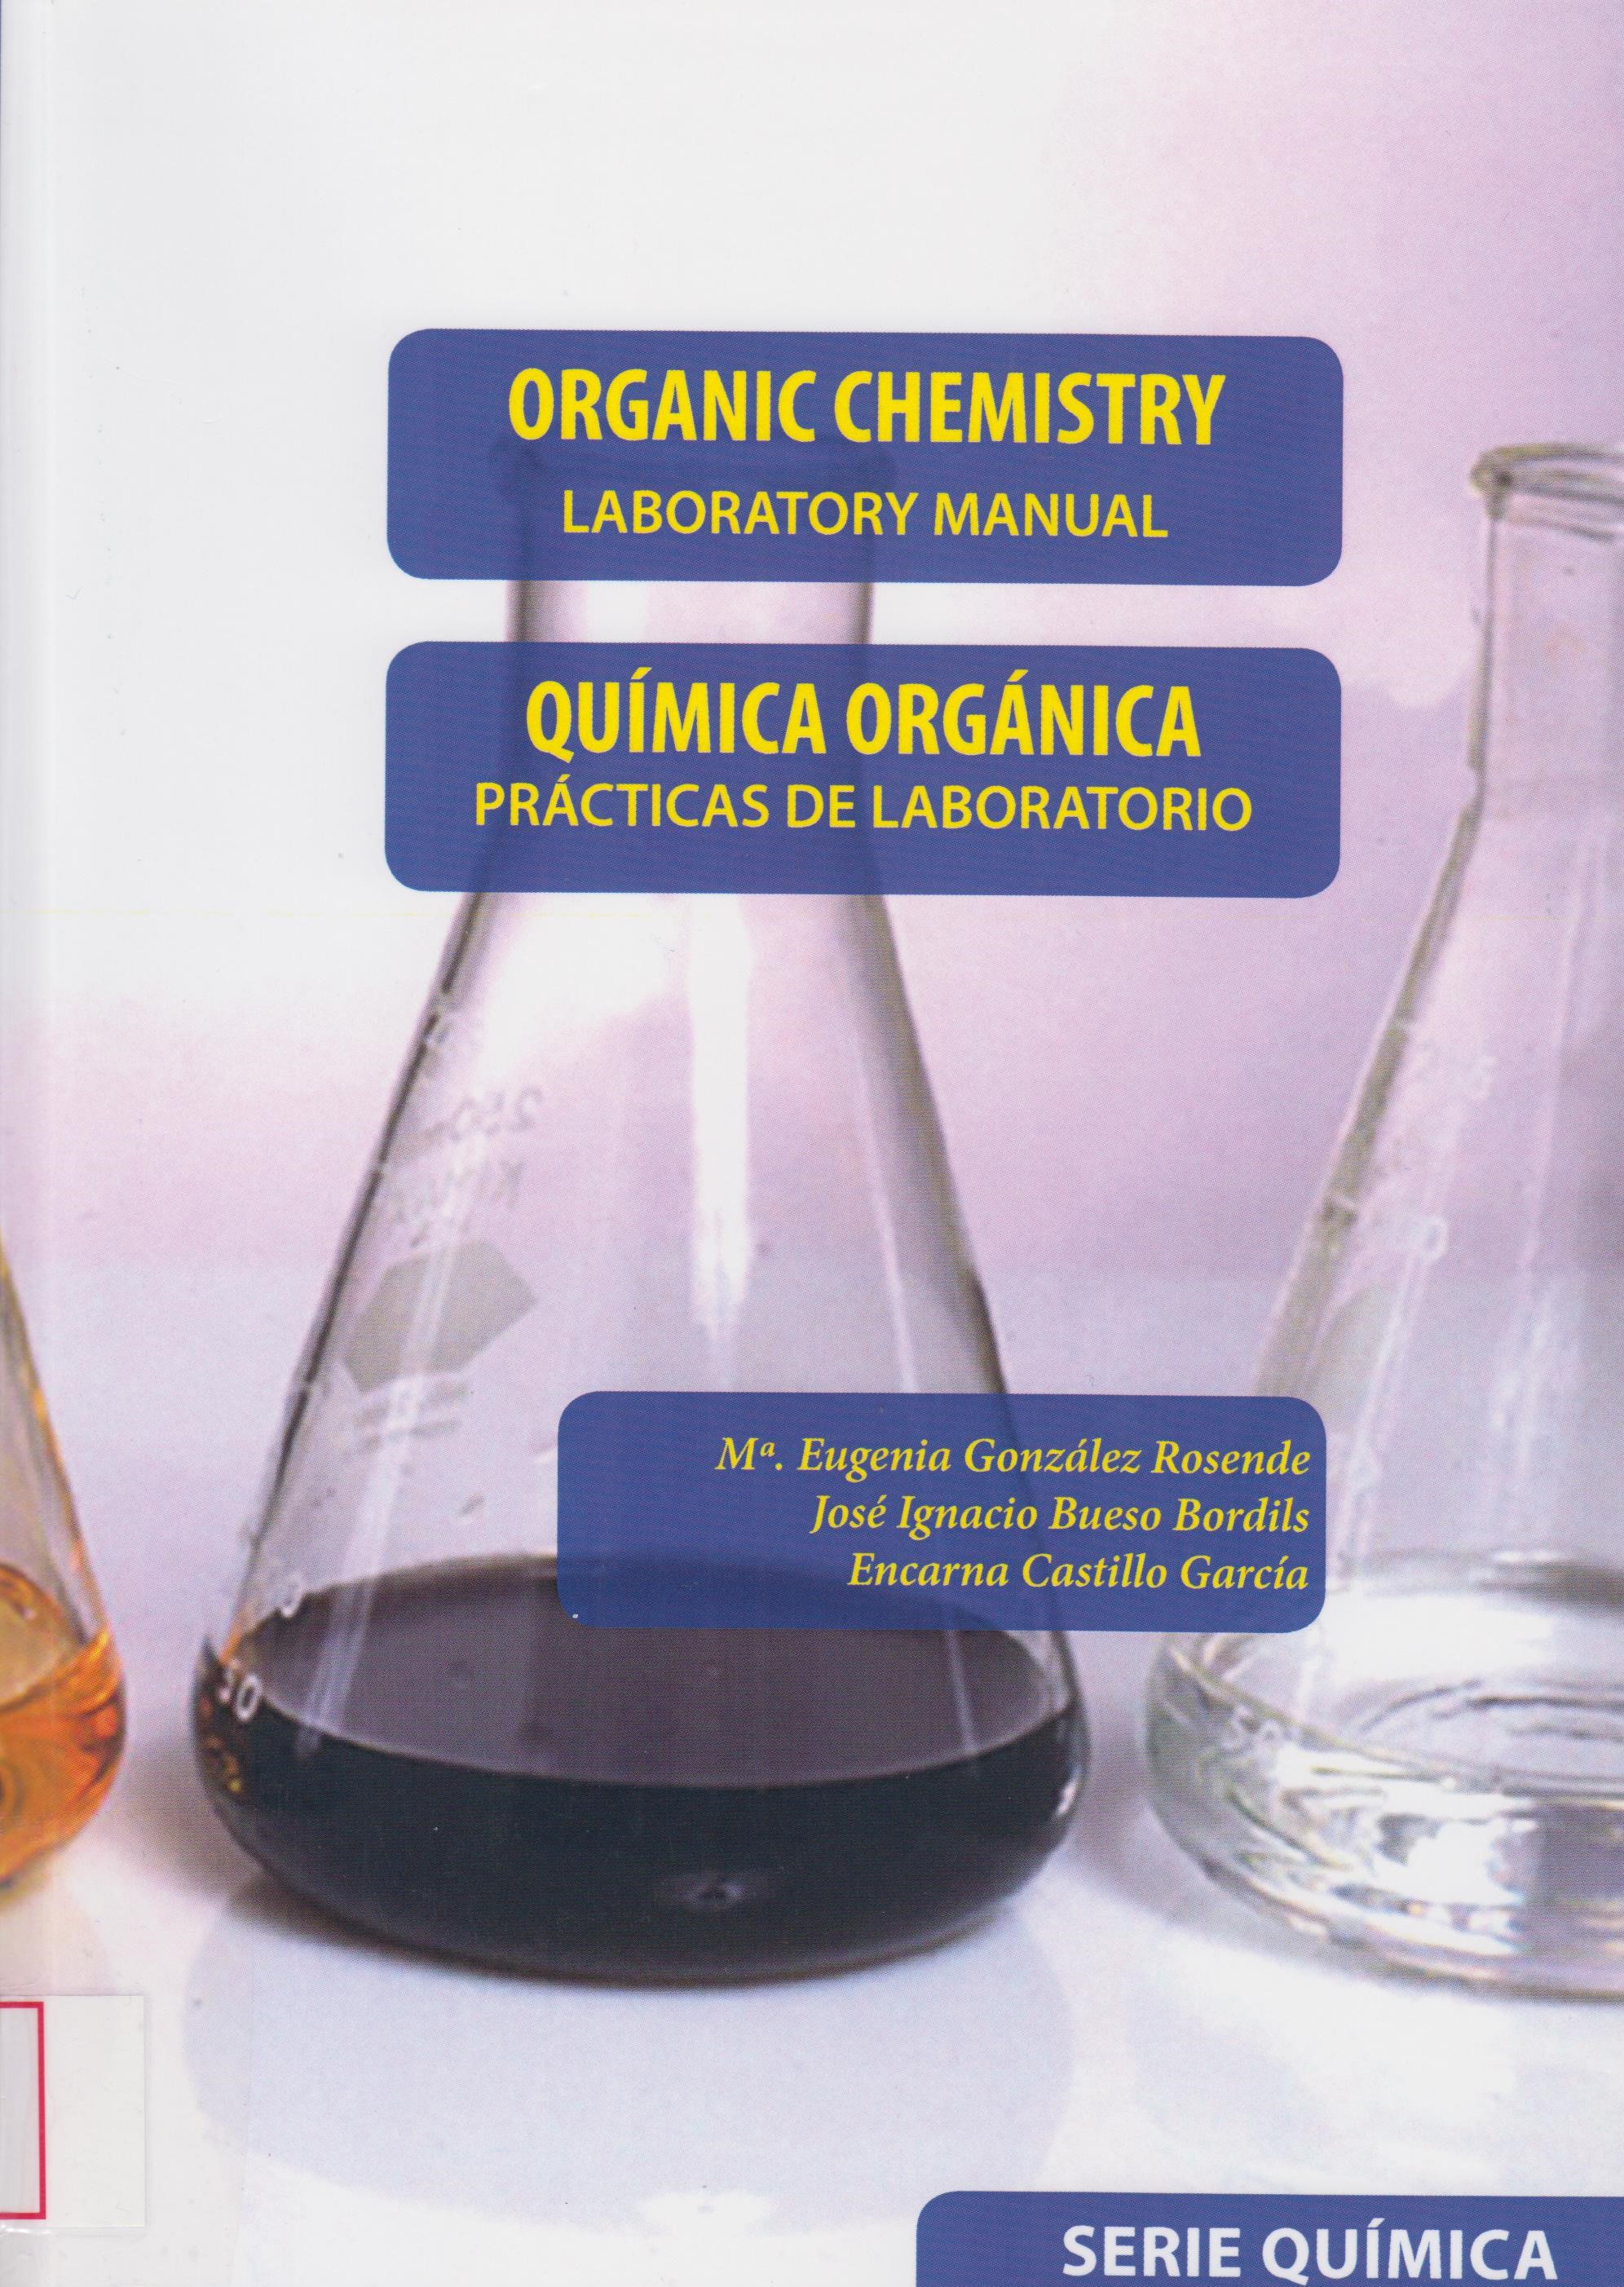 Imagen de portada del libro Organic chemistry